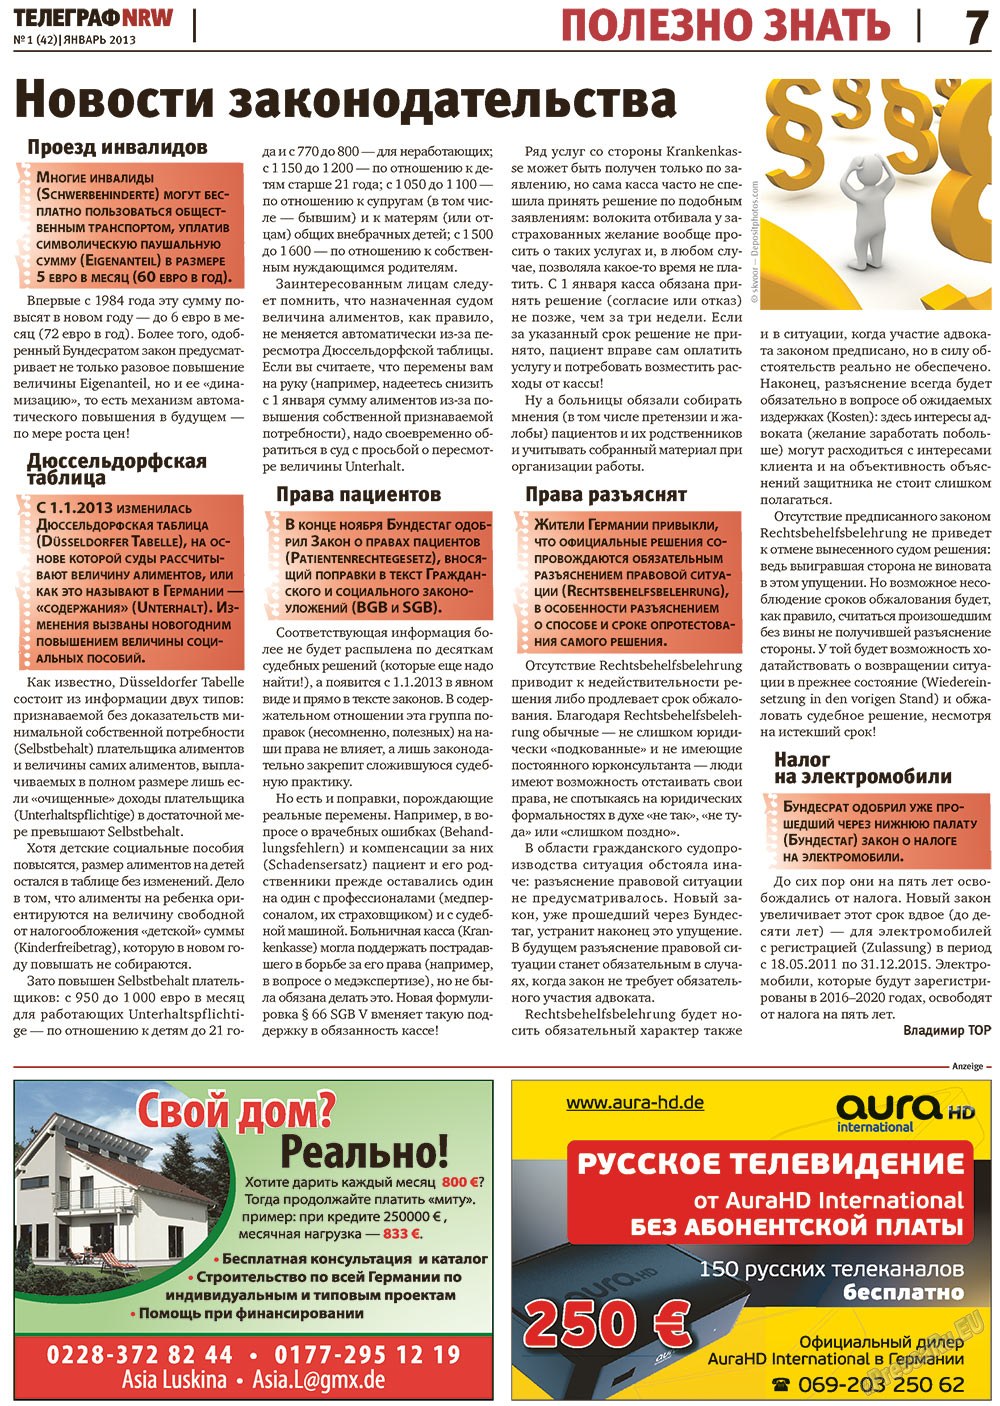 Телеграф NRW (газета). 2013 год, номер 1, стр. 7